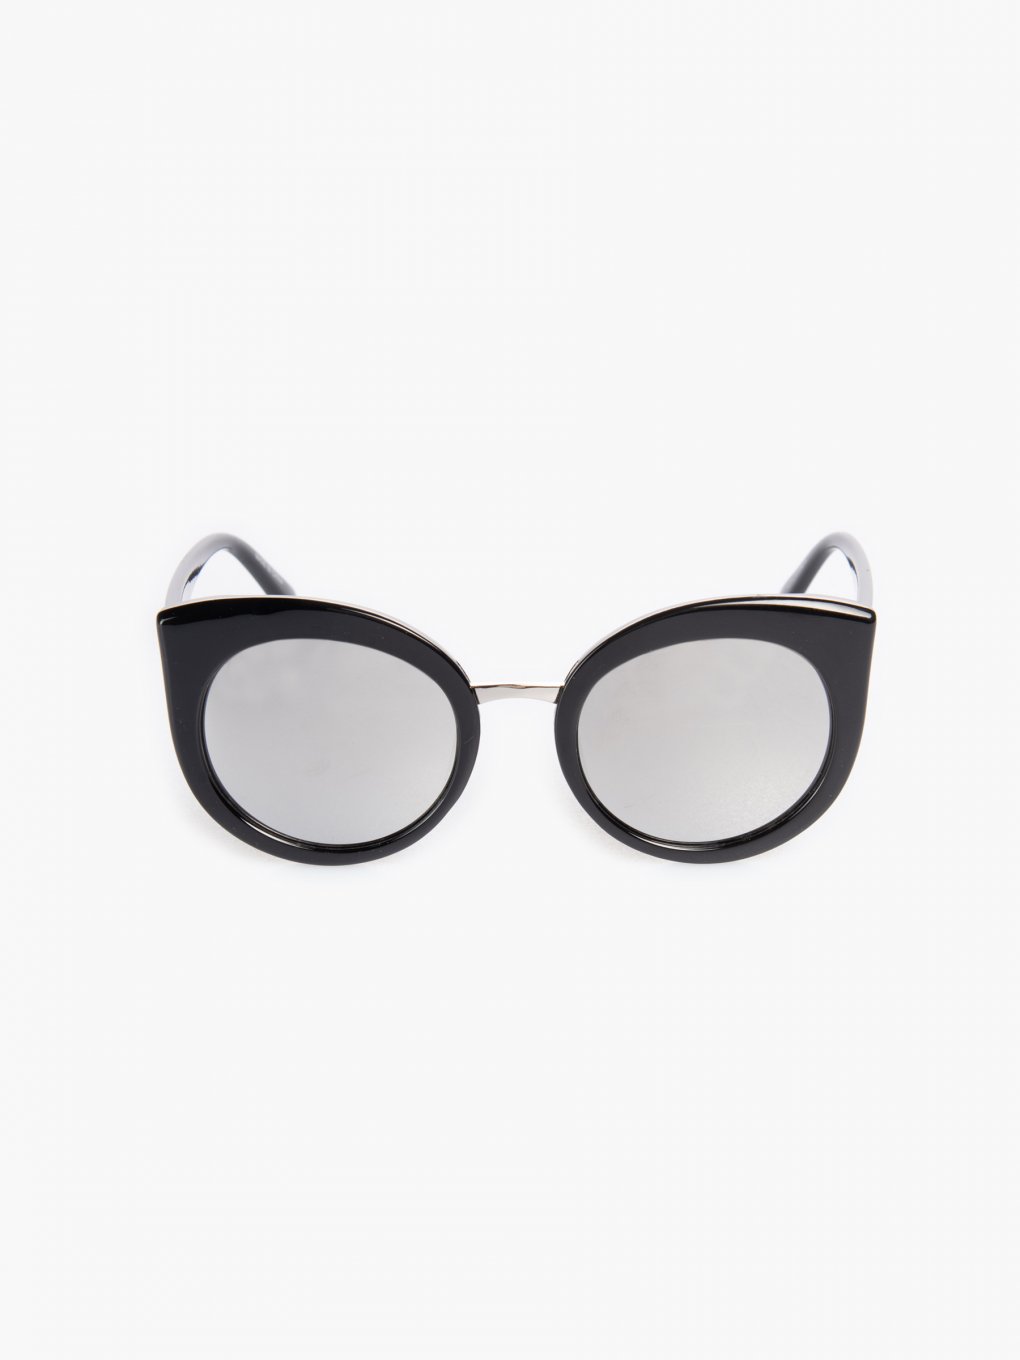 Okulary przeciwsłoneczne damskie kocie oczy z lusterkami